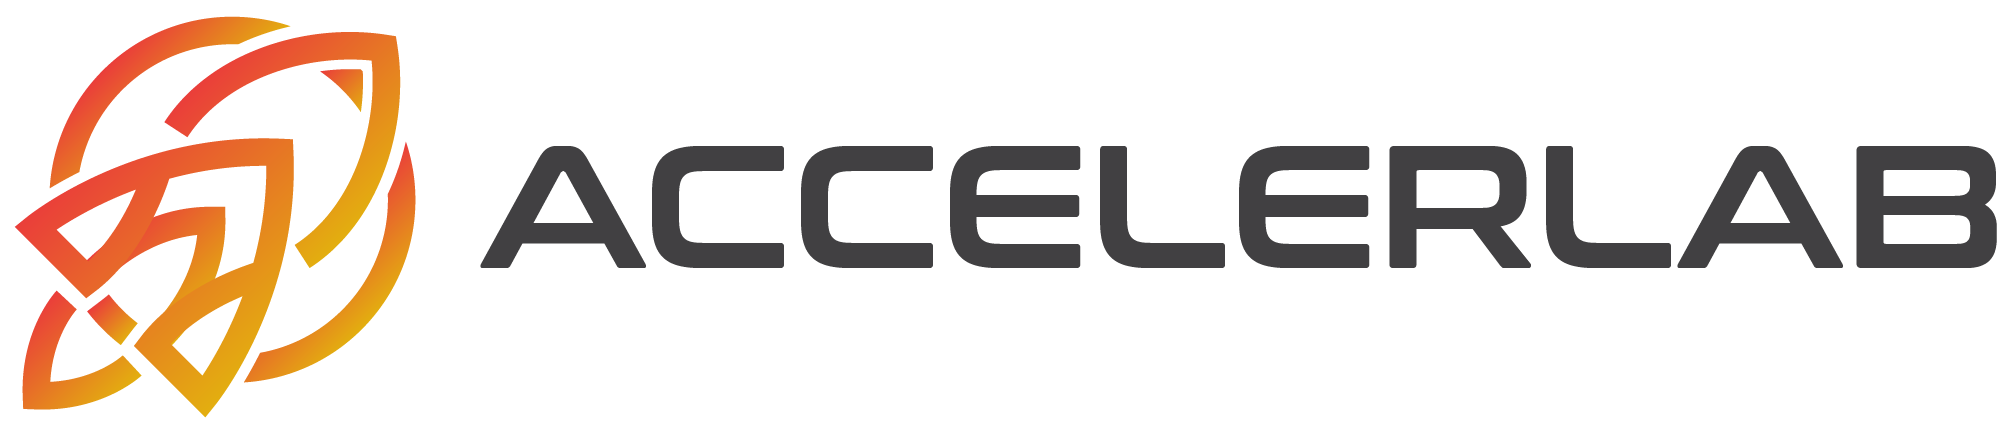 Accelerlab